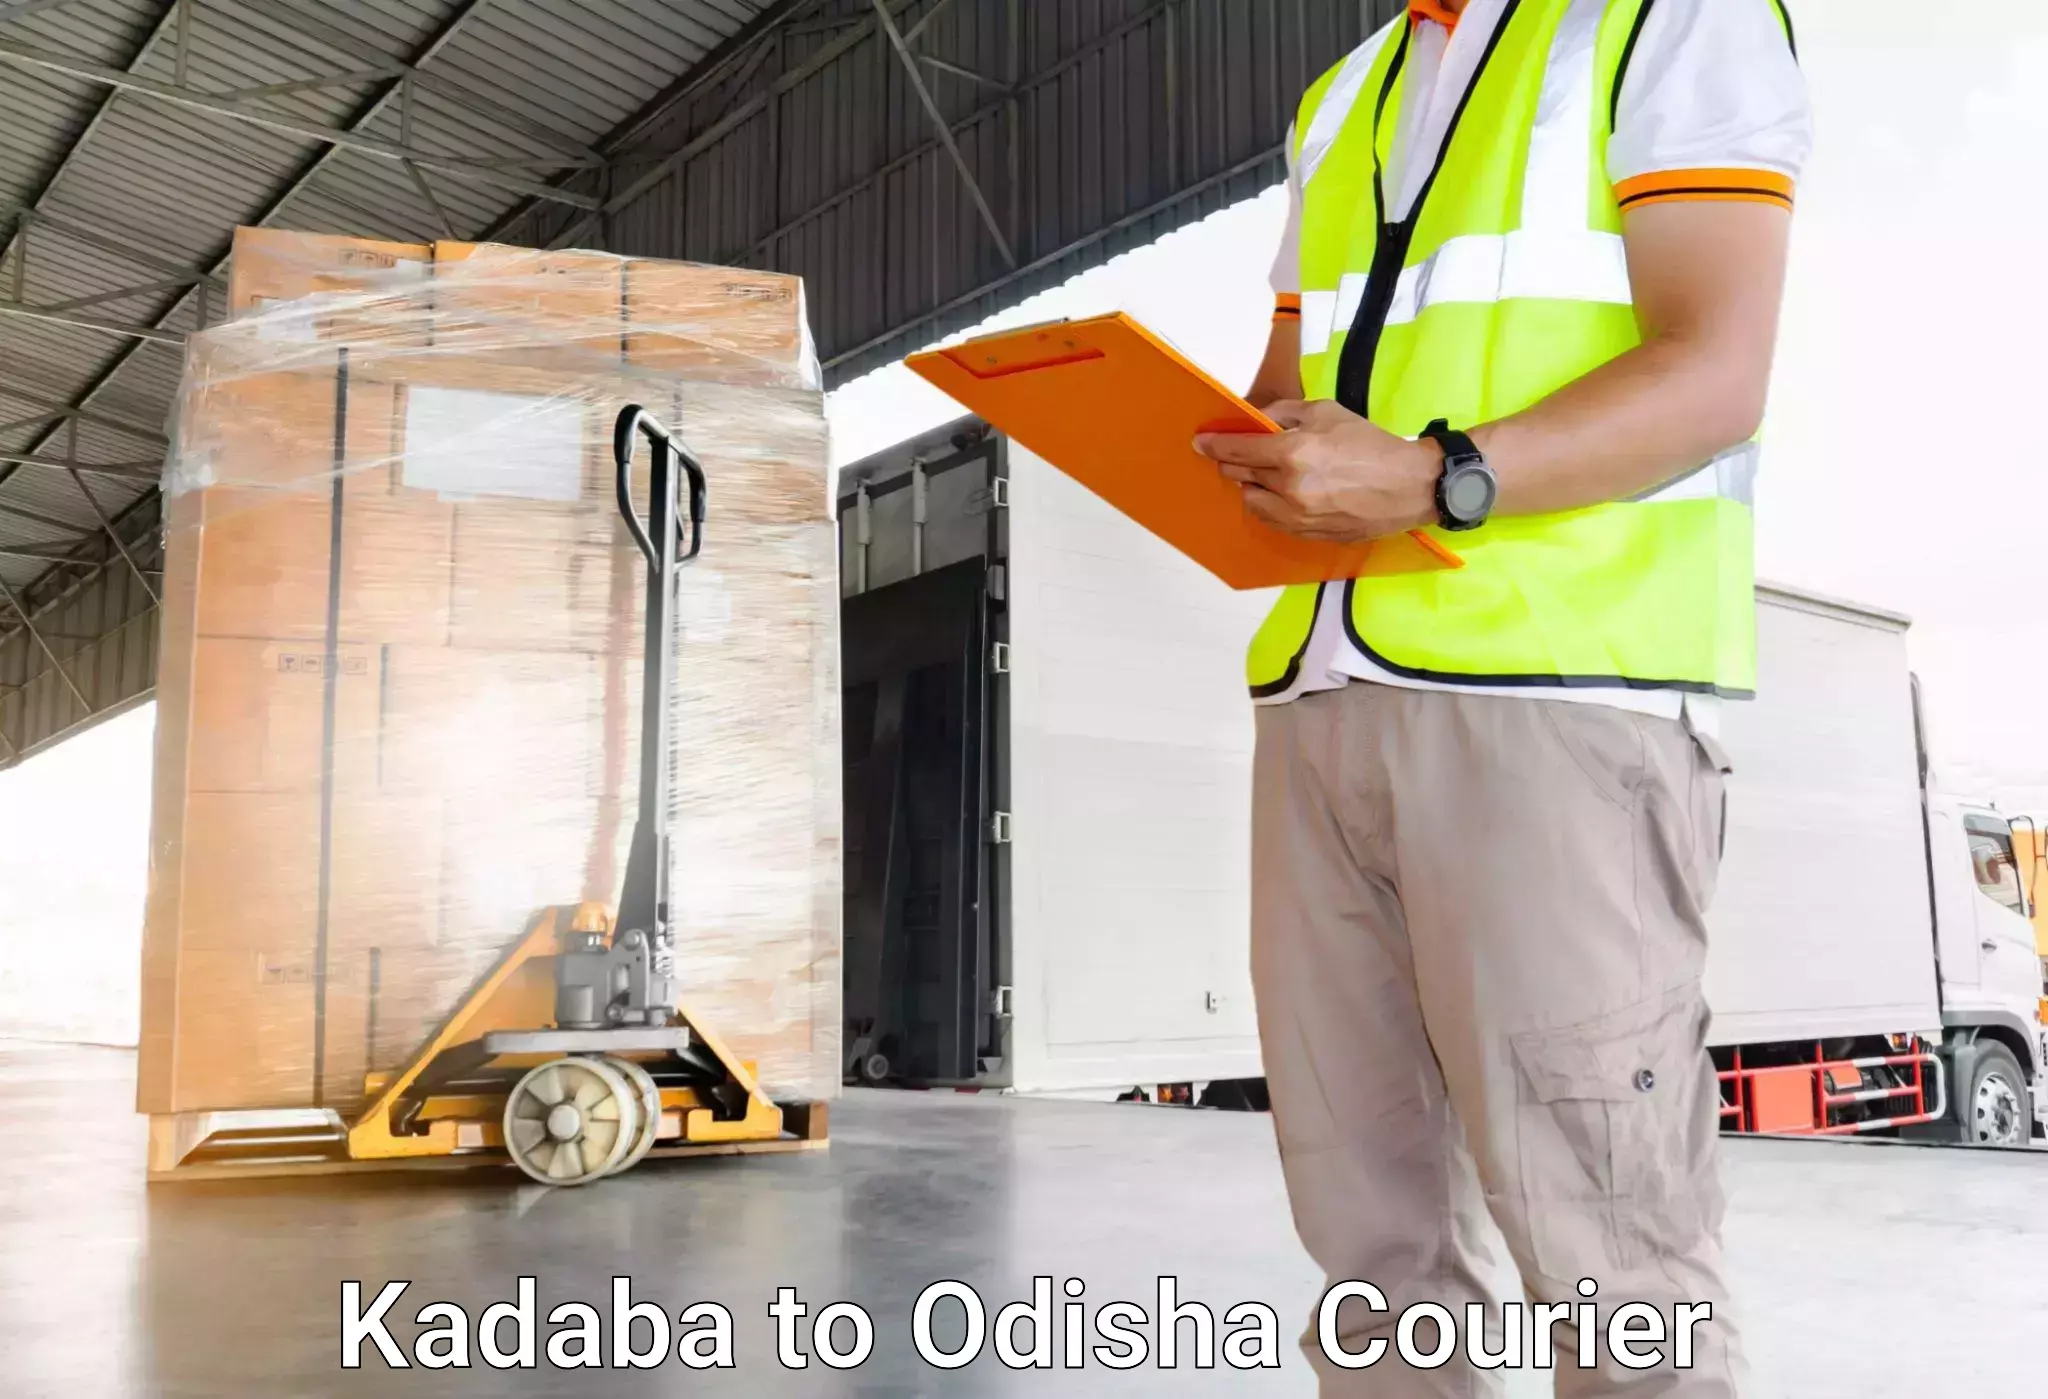 Efficient luggage delivery in Kadaba to Ukhunda